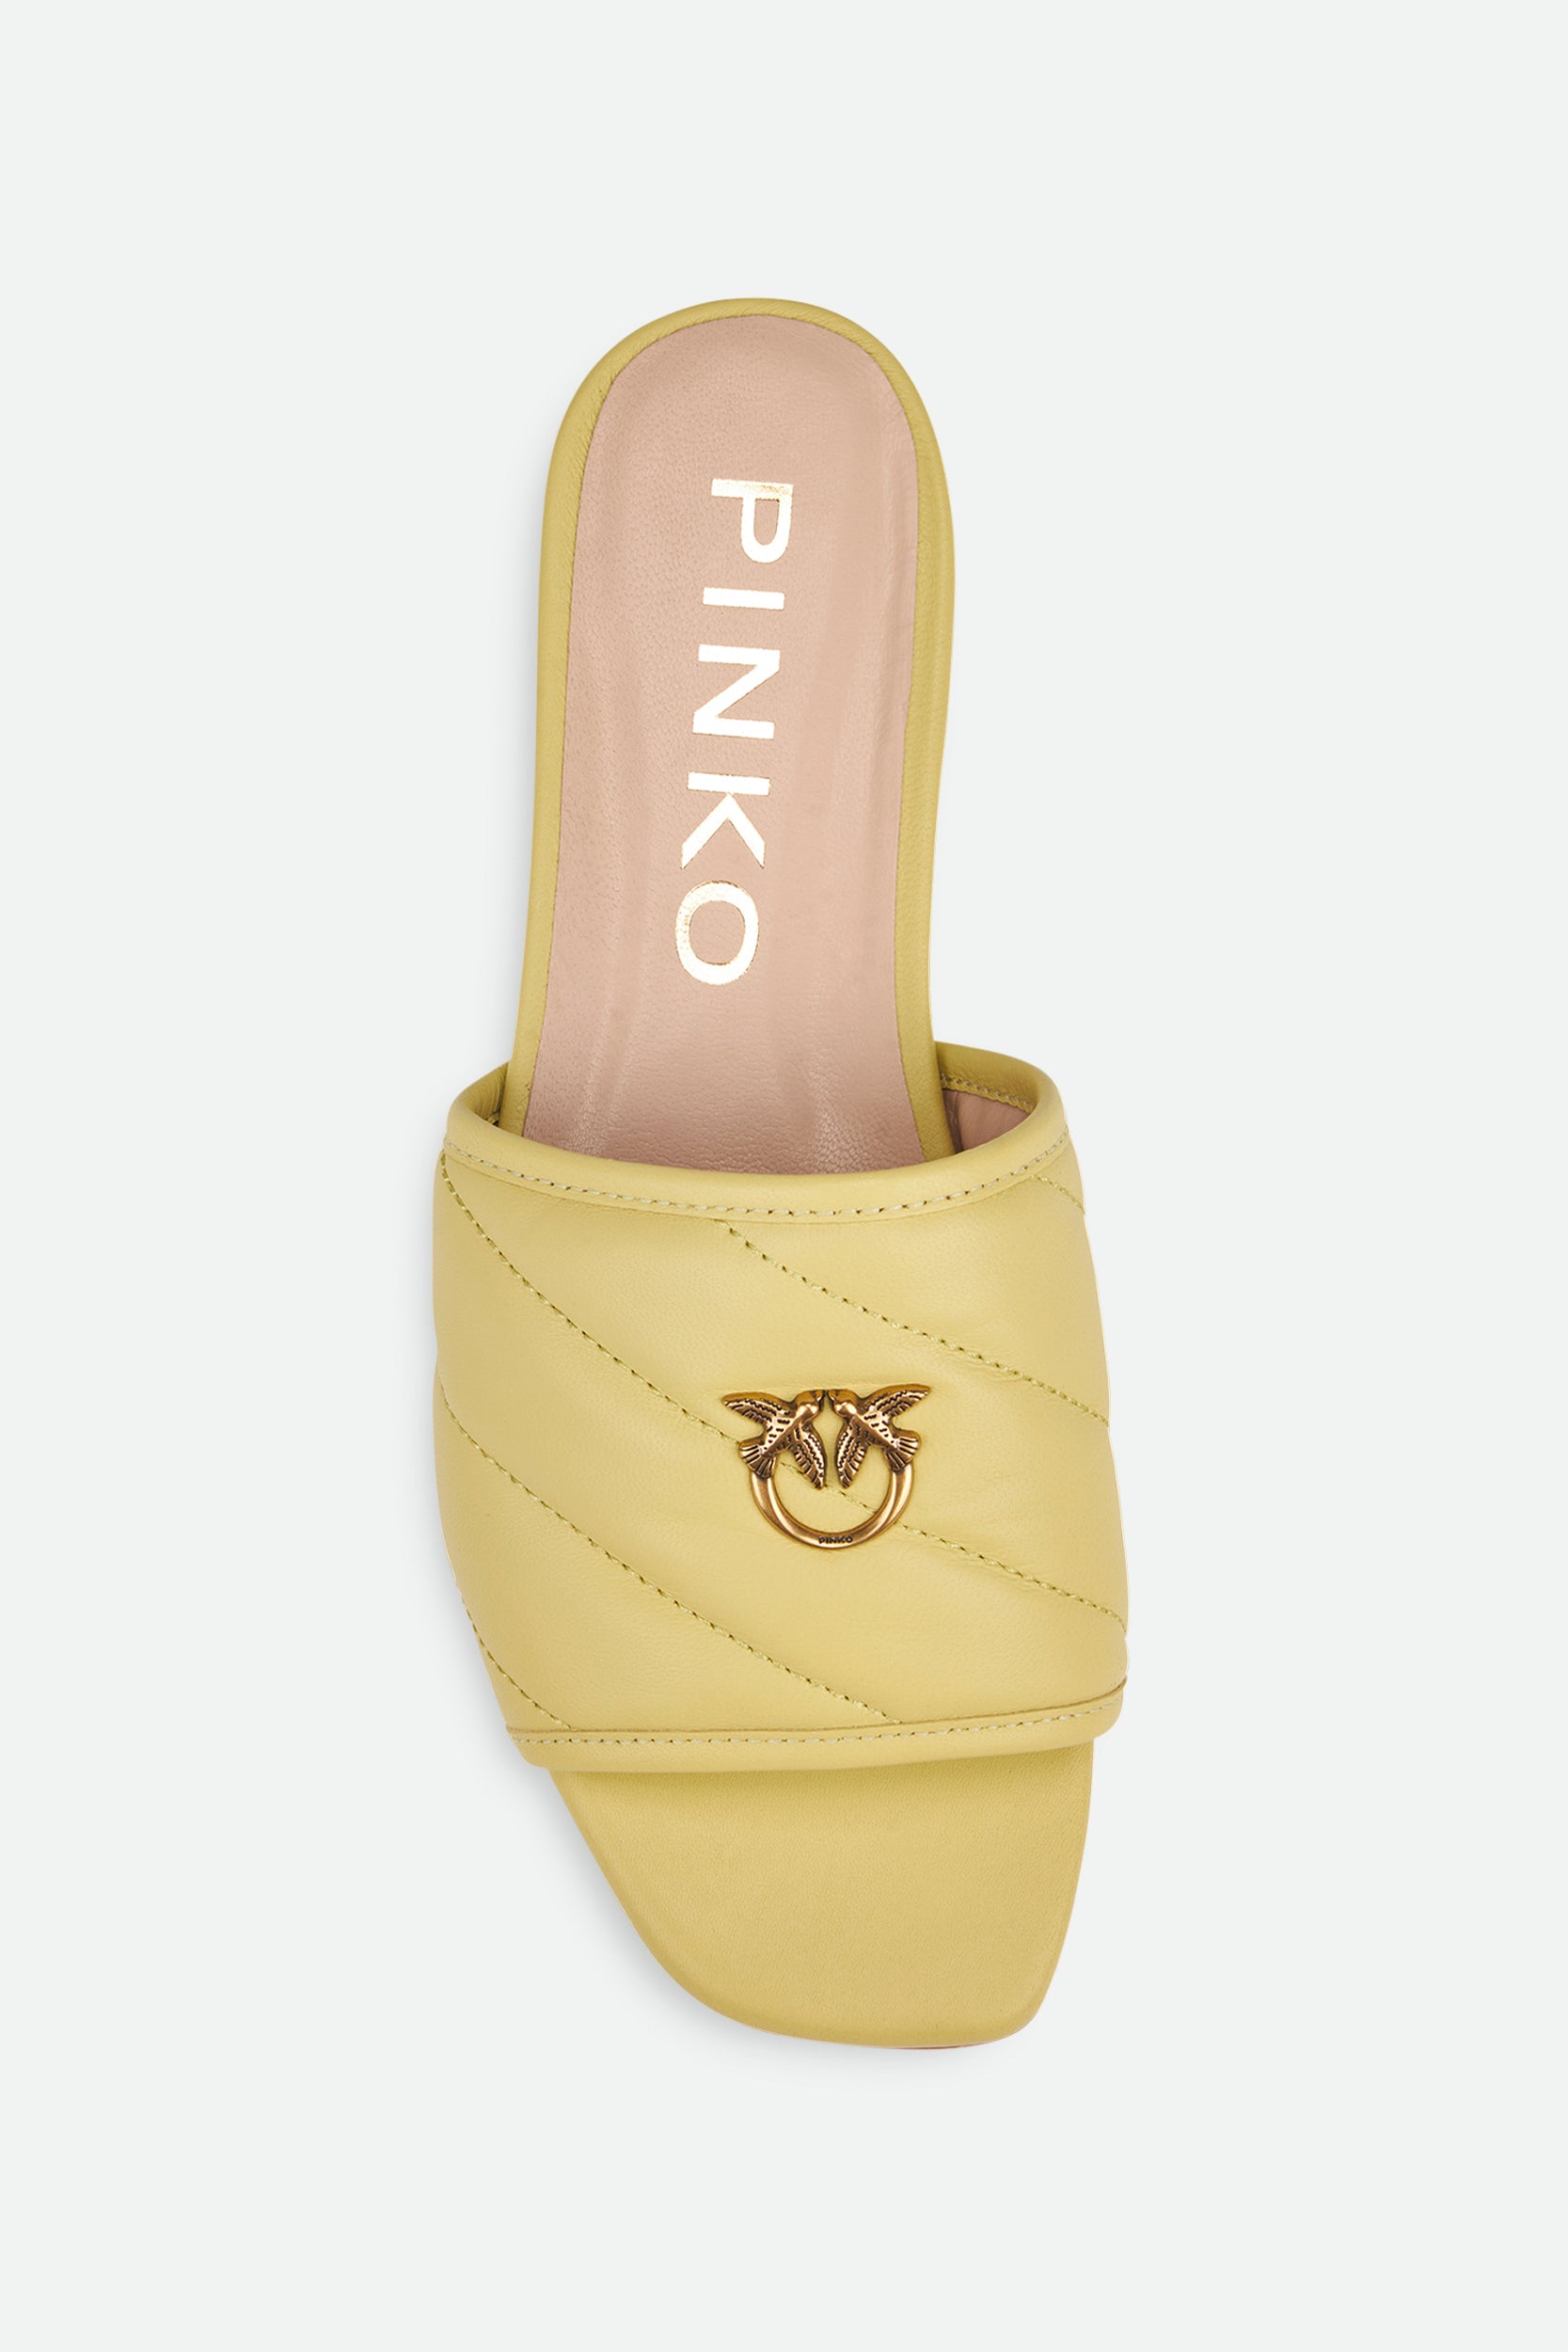 Pinko Yellow Low Sandal